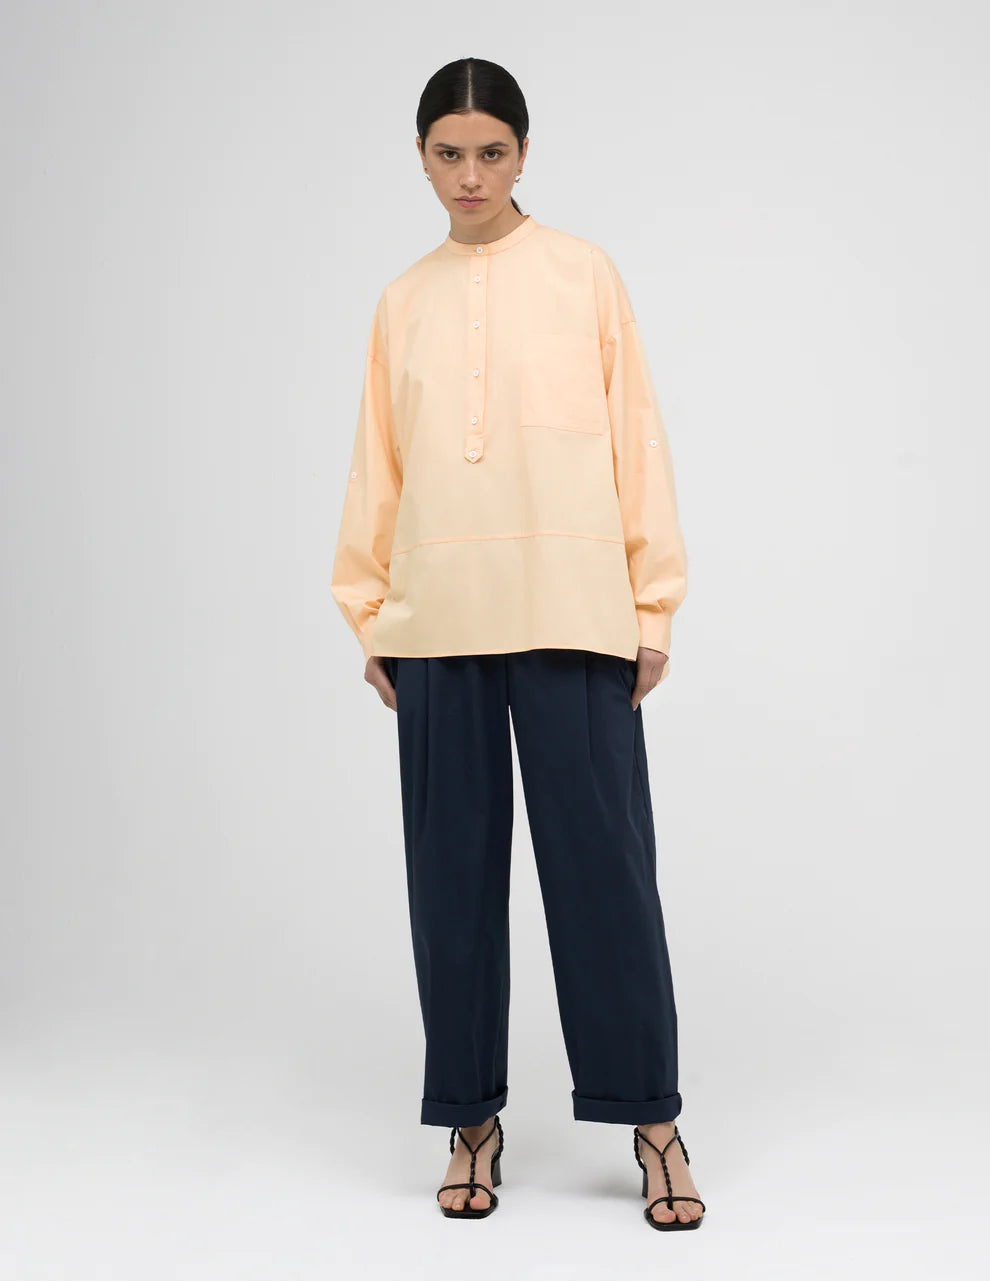 Mandarin-Style Collar Shirt